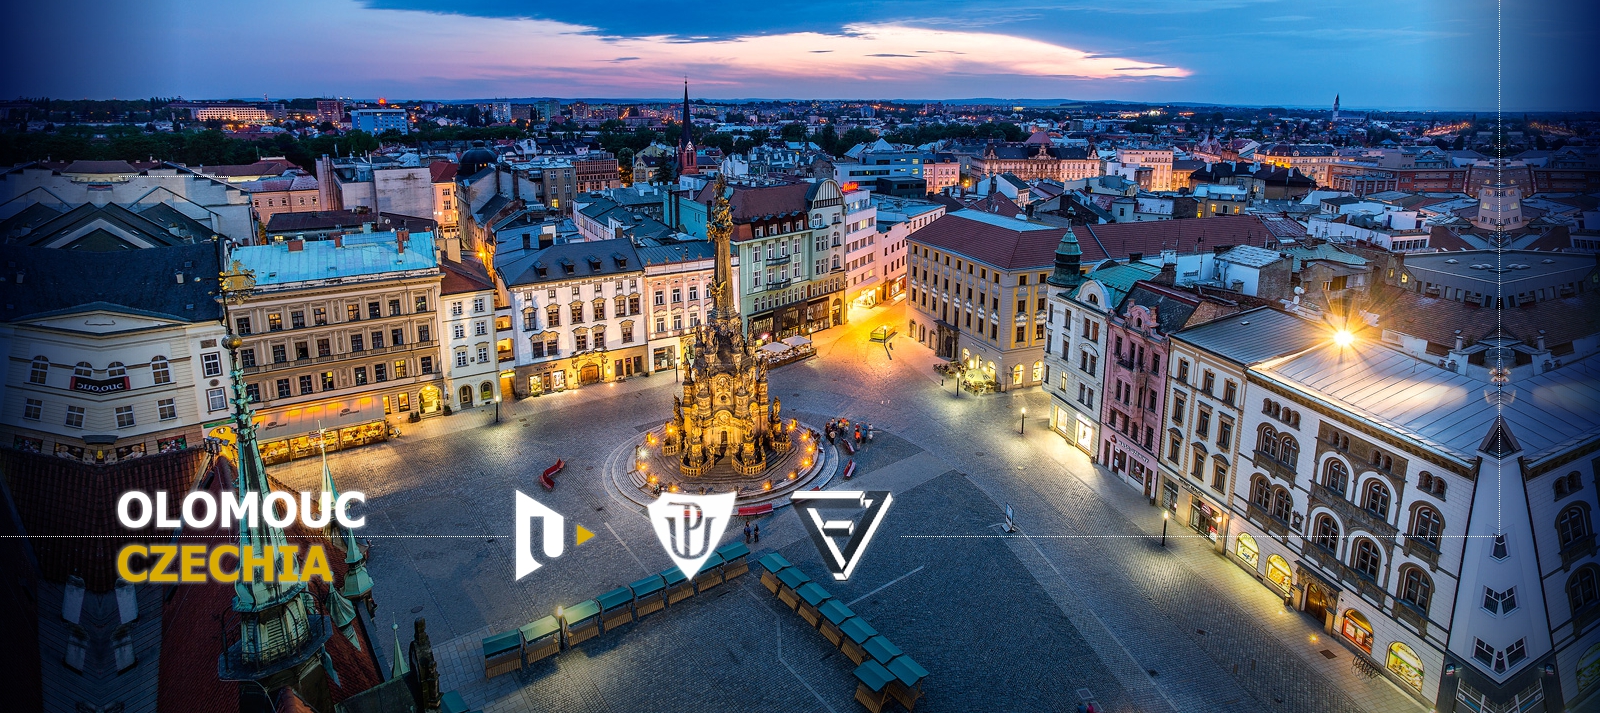 Olomouc: Horní náměstí (Upper Square)